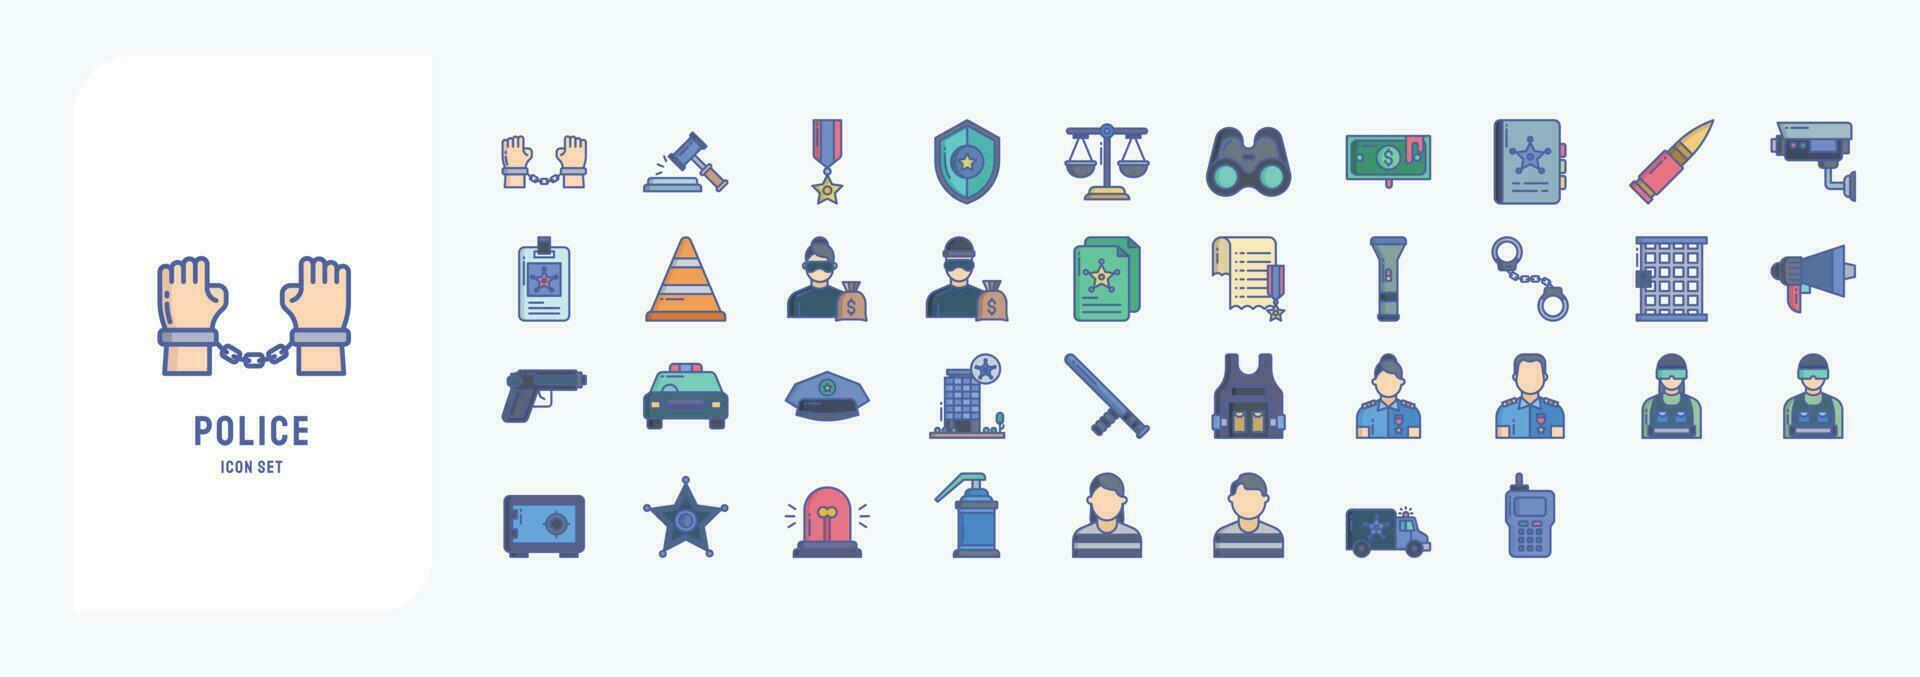 colección de íconos relacionado a policía y ley, incluso íconos me gusta arrestar, subasta, bala, prismáticos y más vector